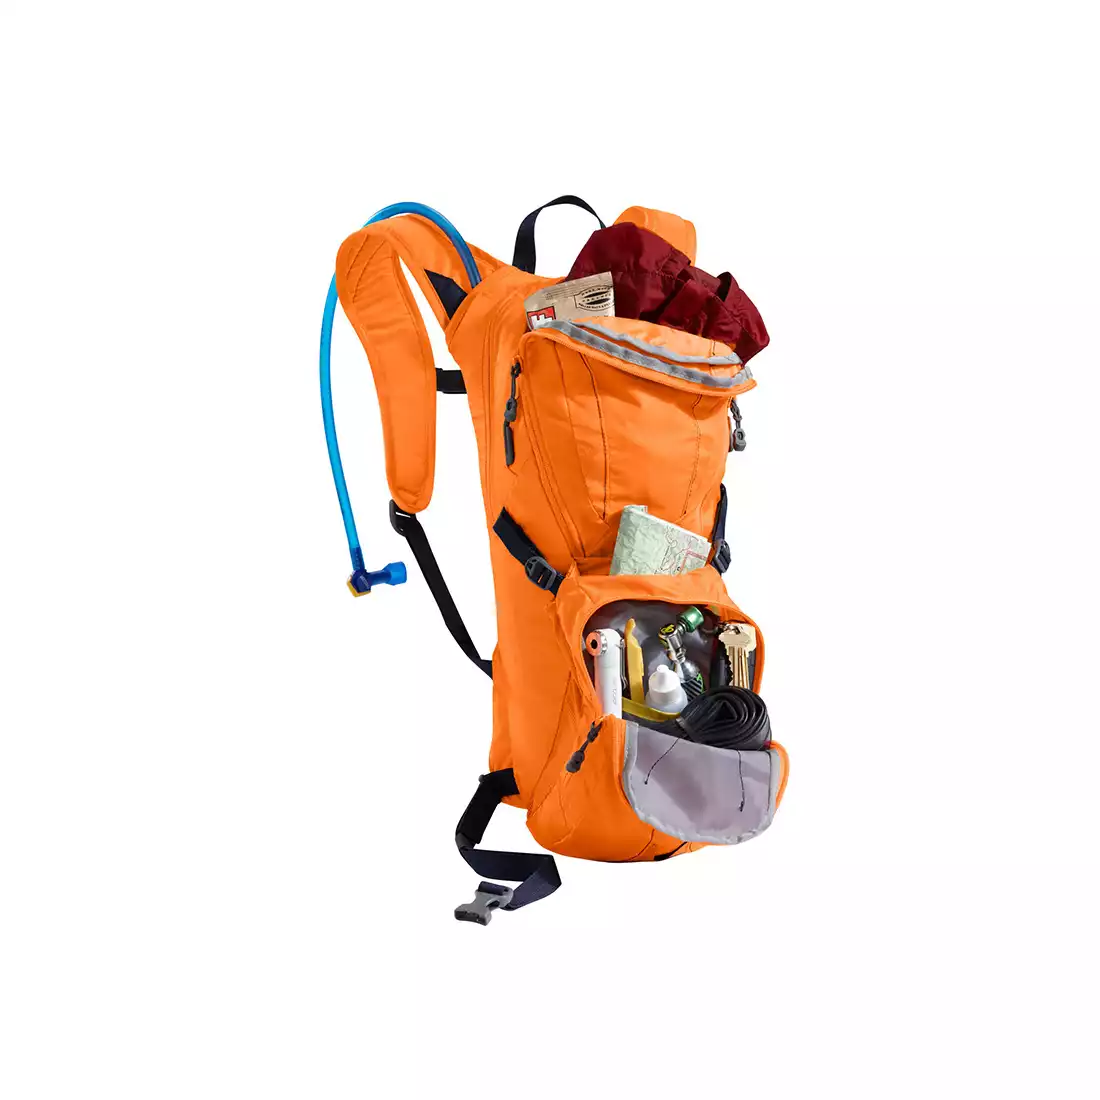 CAMELBAK plecak z bukłakiem Lobo 100 oz / 3L Charcoal/Ember INTL 62552-IN SS16